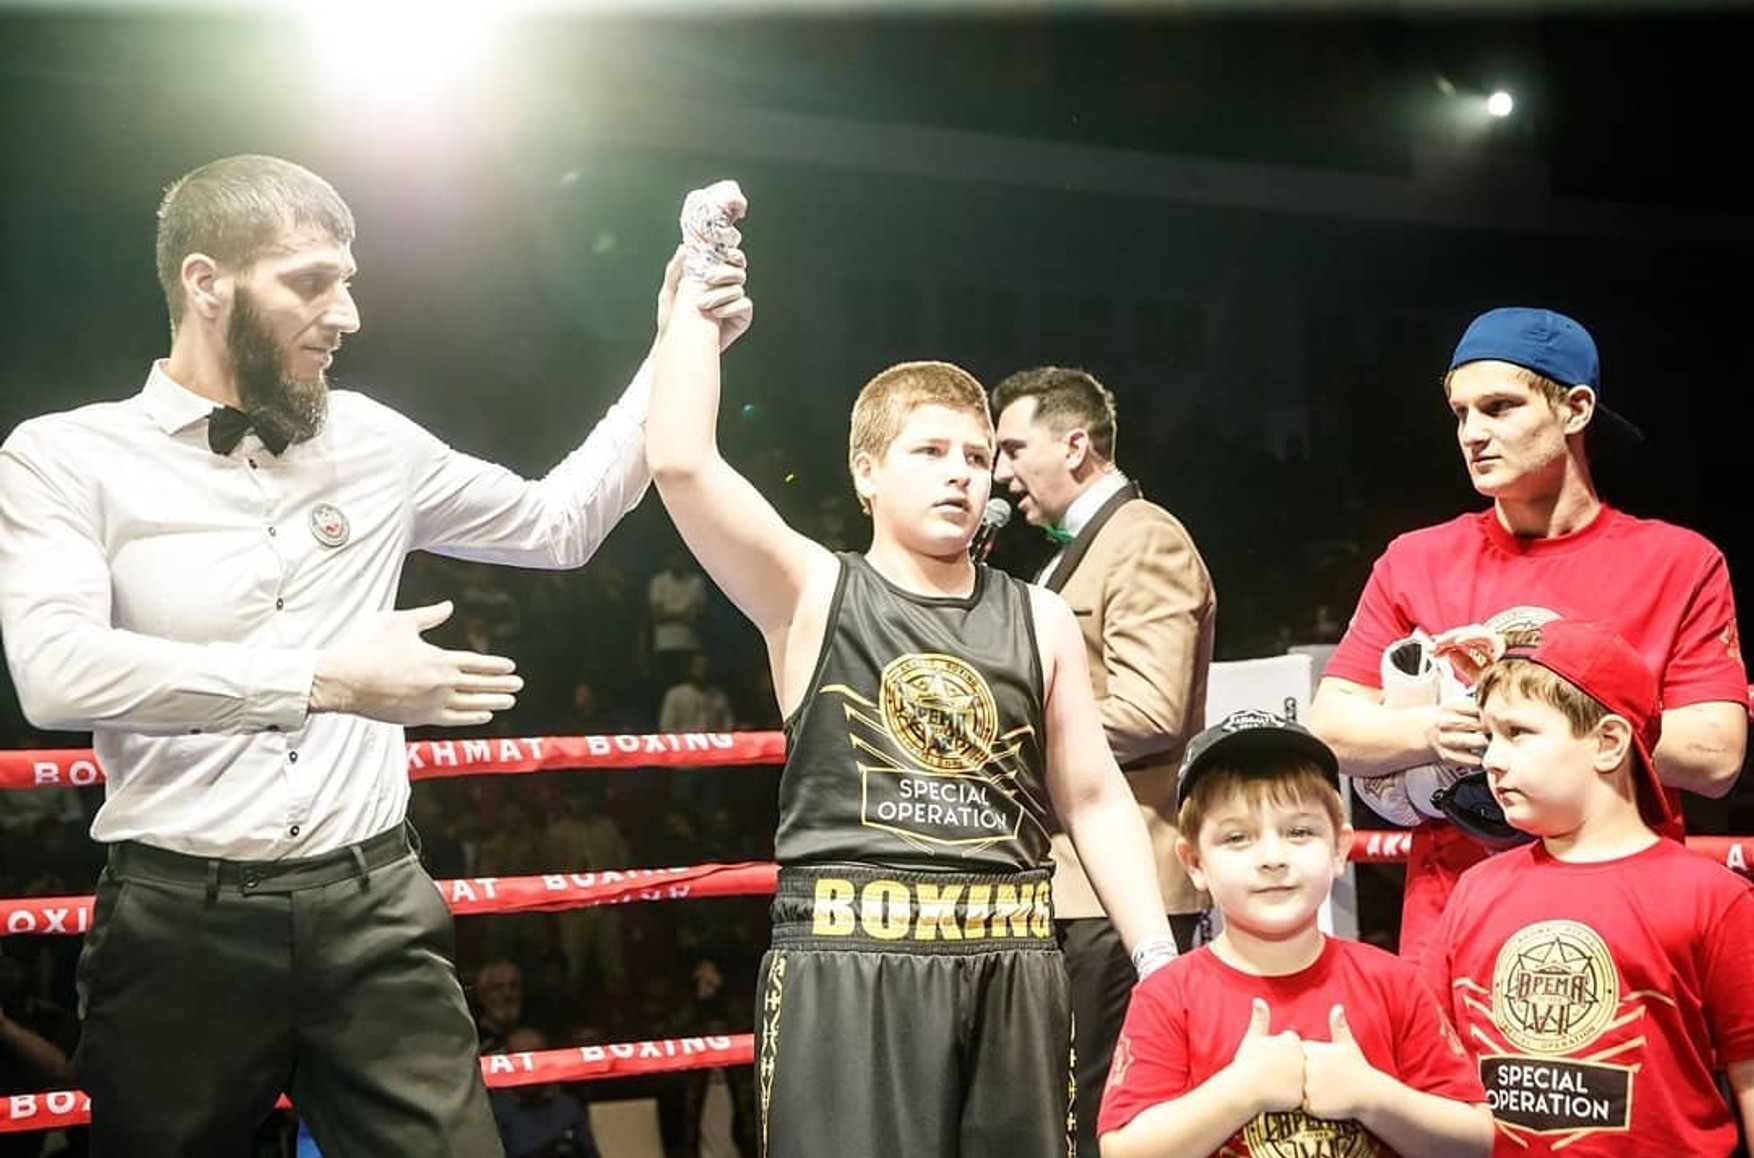 Син Кадирова виграв боксерський поєдинок після того, як бій зупинили в його користь без будь-якої причини